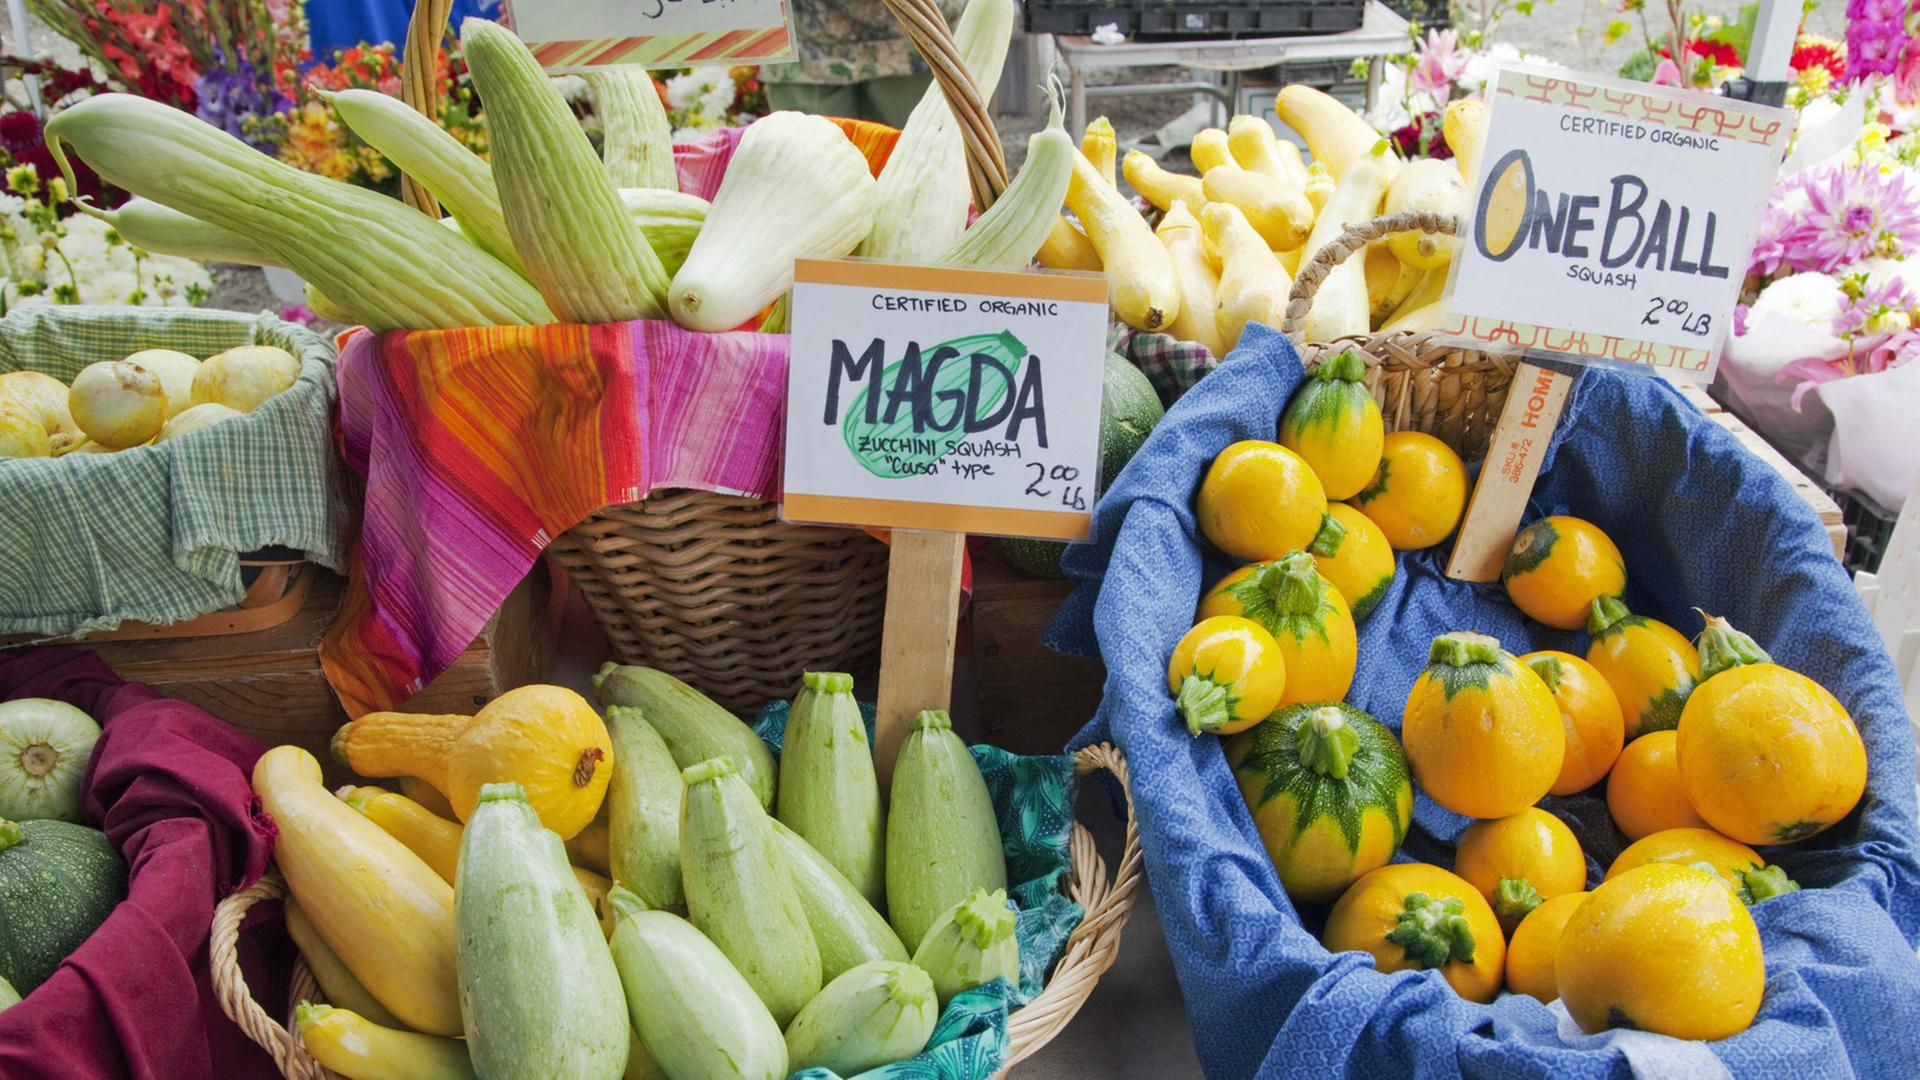 Ein Auswahl von Gemüse auf einem US-amerikanischen "Farmers market" - hier in Oregon. Verkauft werden dort biologisch erzeugte Lebensmittel aus der Region.